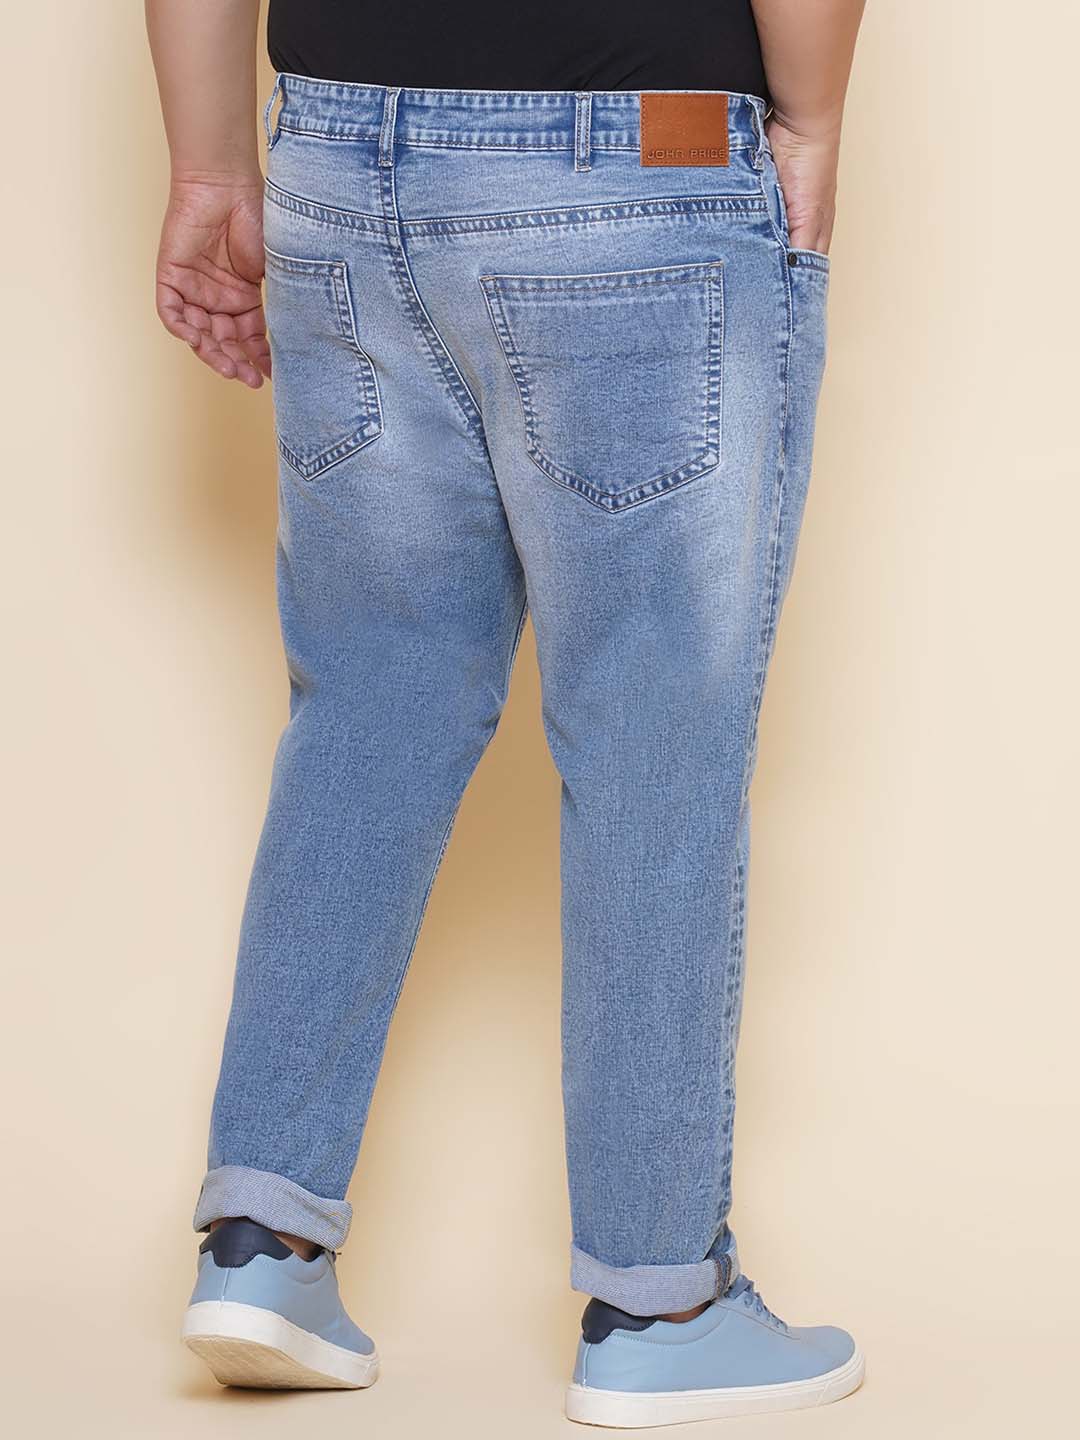 bottomwear/jeans/JPJ27101/jpj27101-5.jpg